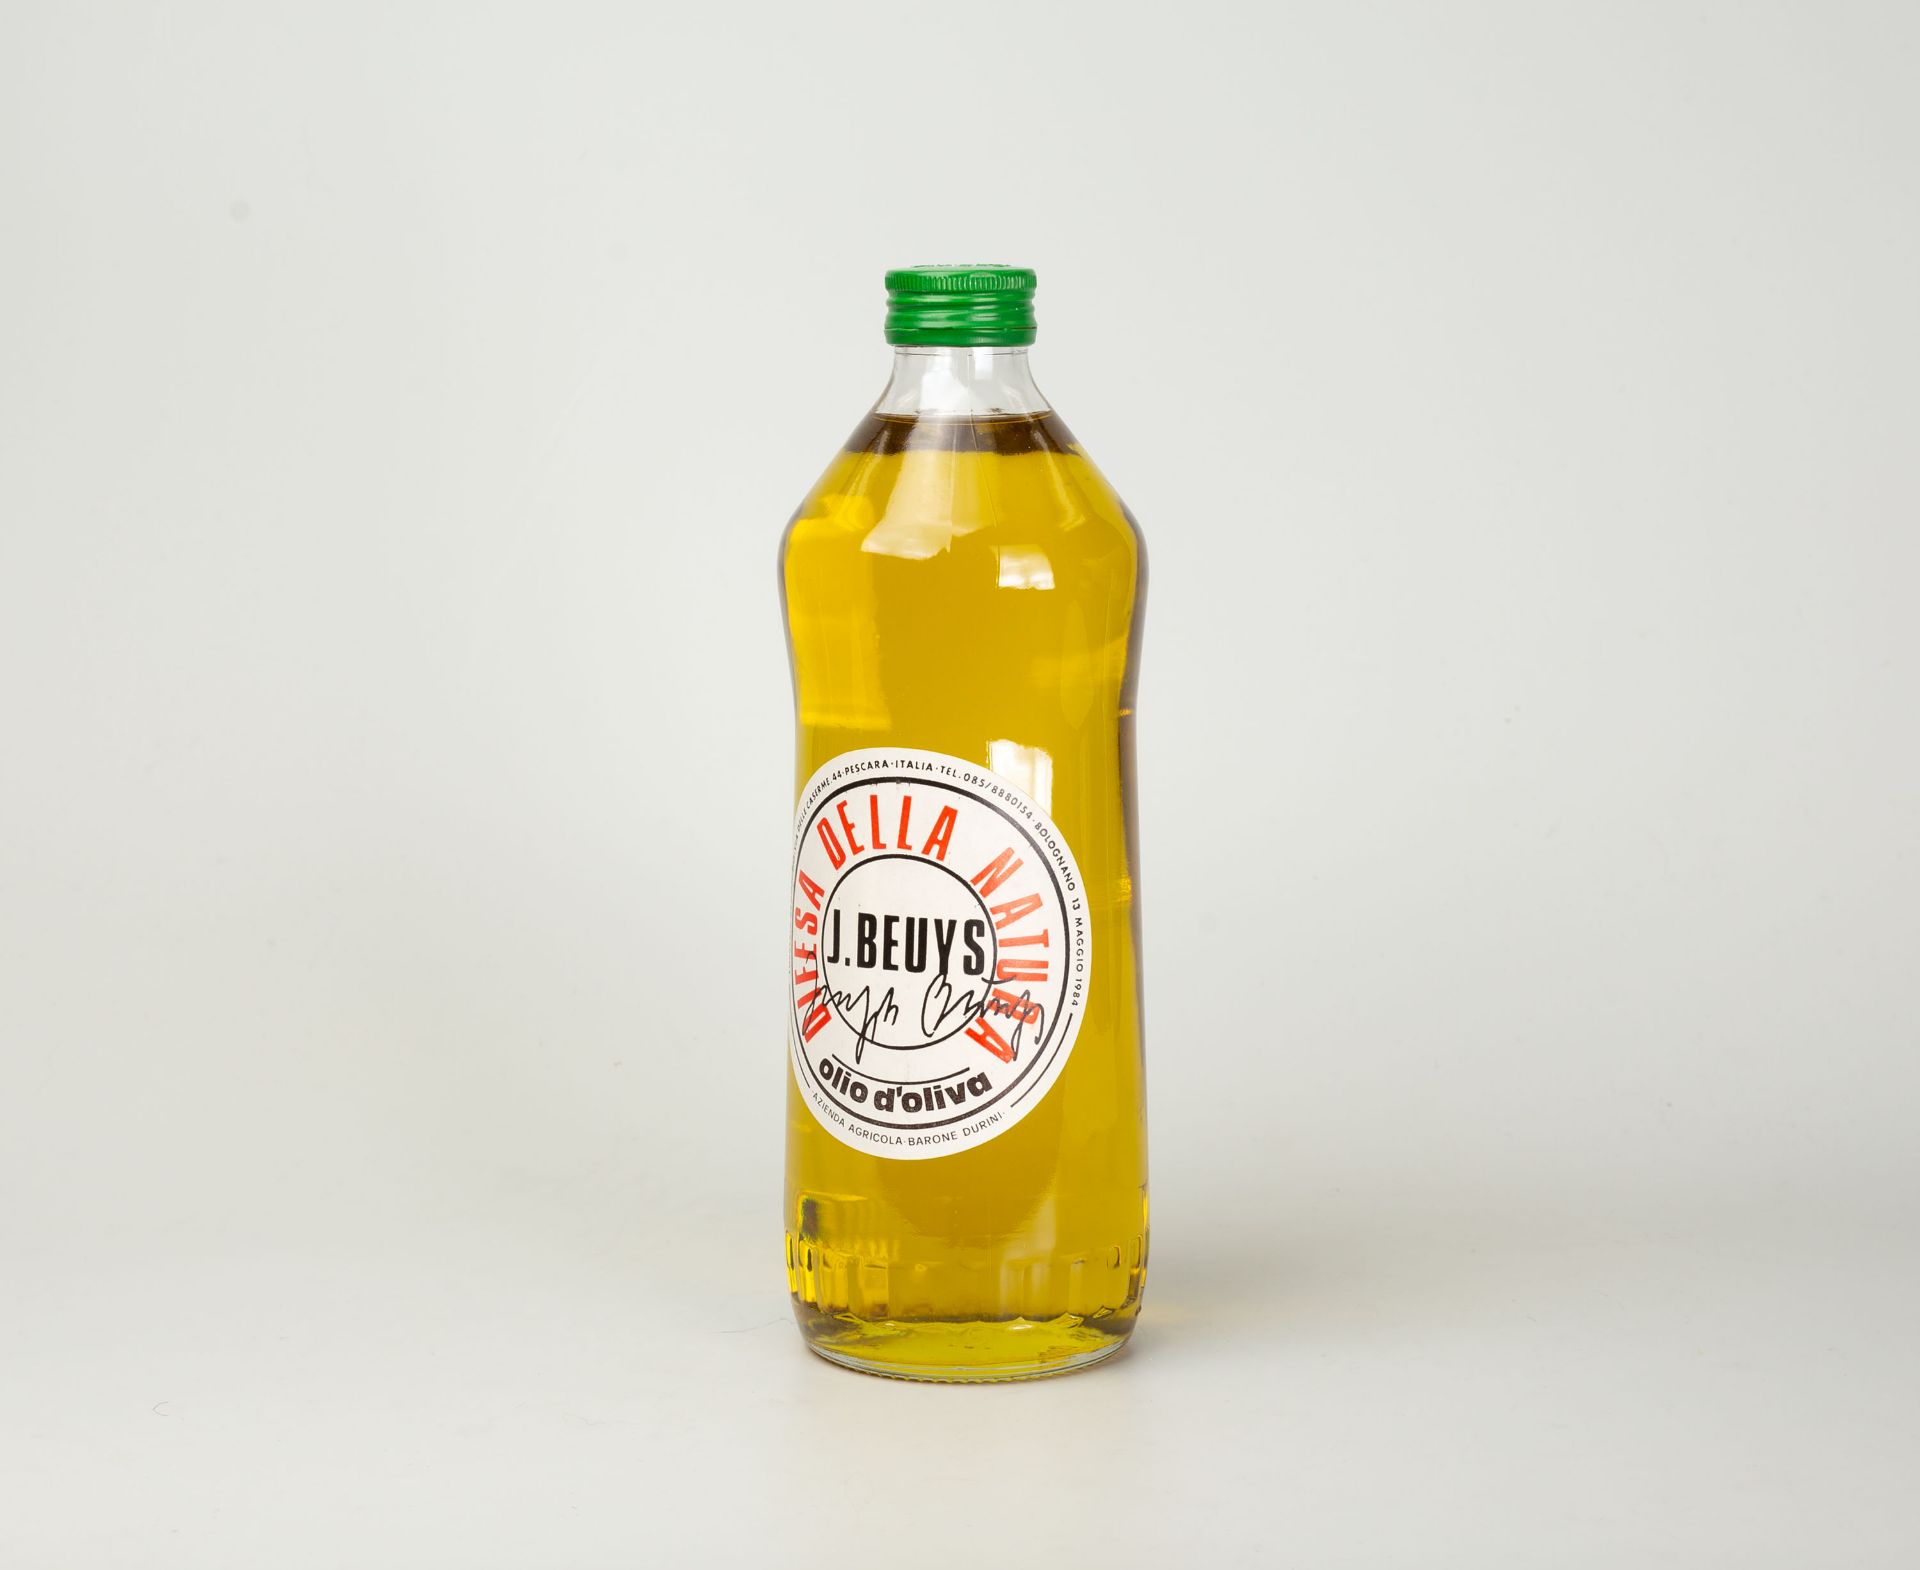 Joseph Beuys, Ölflasche 1984. Flasche Olivenöl.